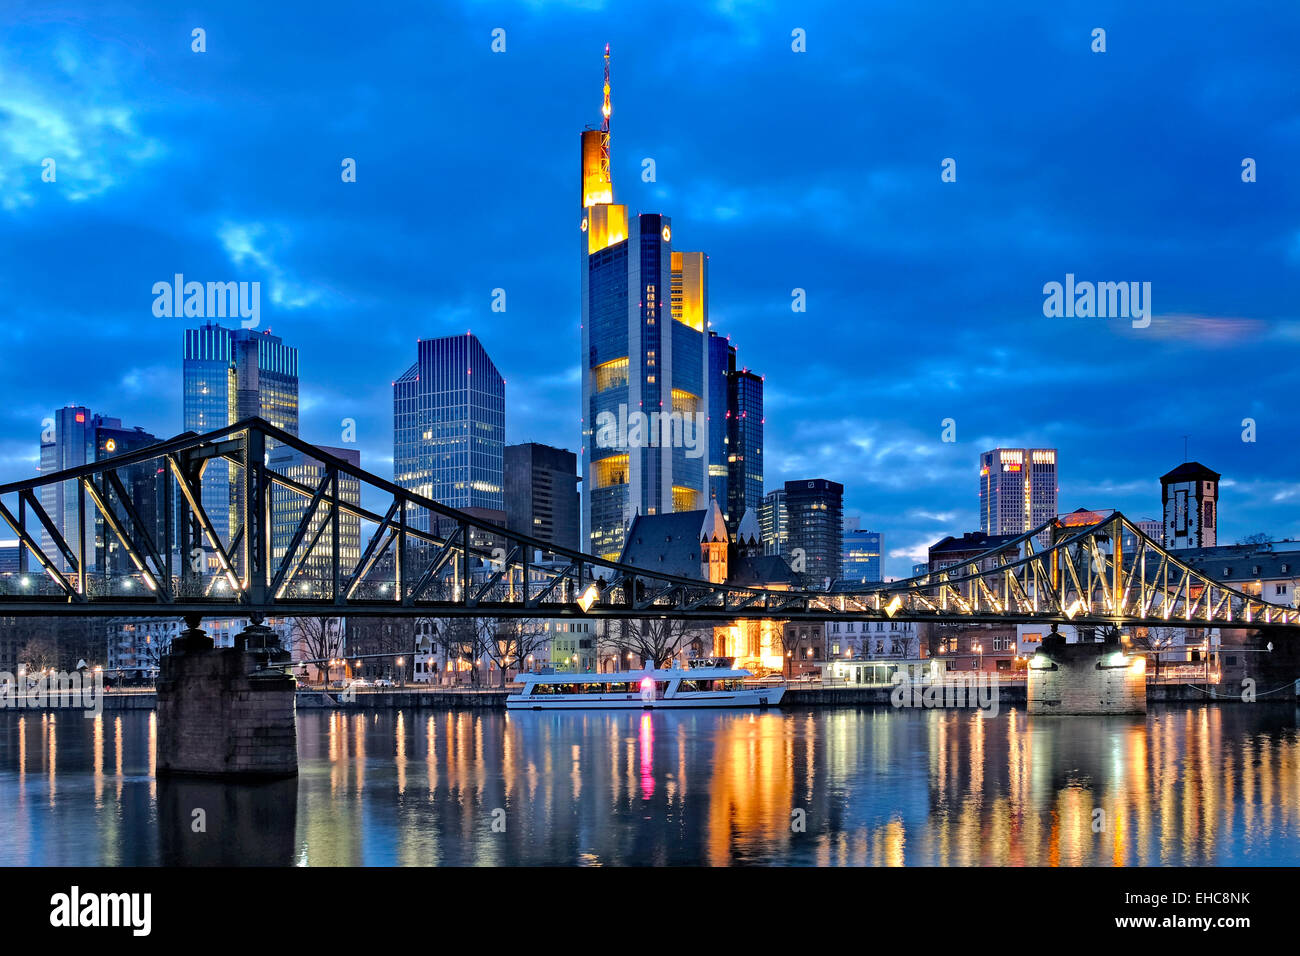 La rivière Main, Eiserner Steg Passerelle et gratte-ciel du quartier d'affaires de Frankfurt, Francfort, Allemagne Banque D'Images